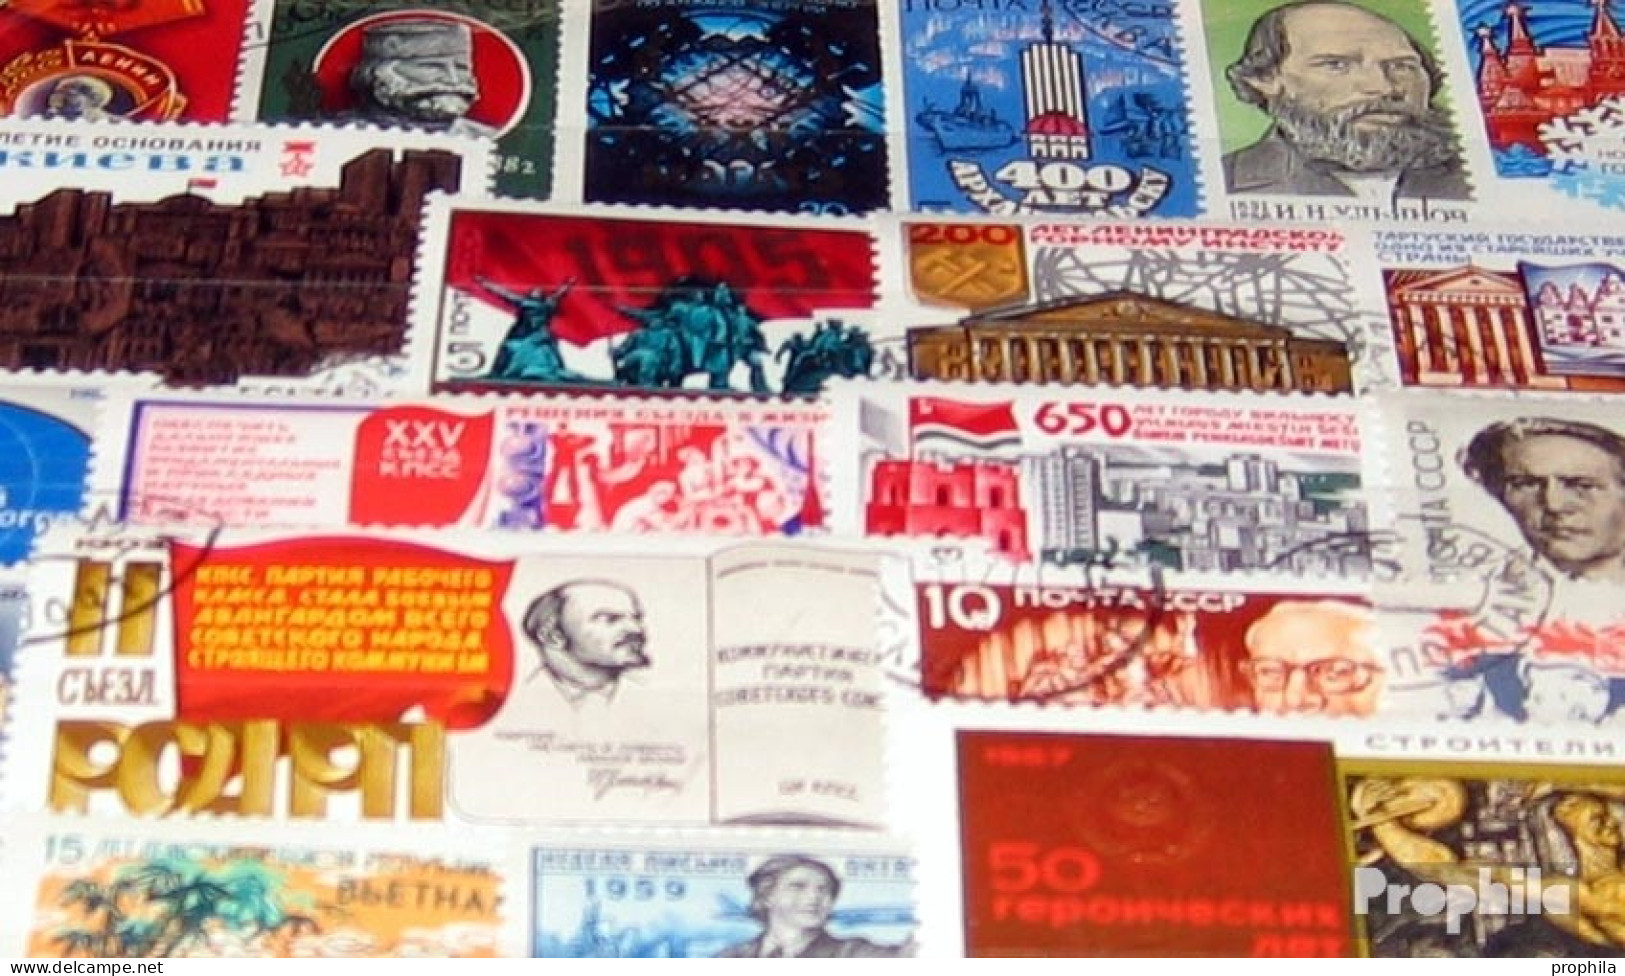 Sowjetunion 200 Verschiedene Sondermarken - Collections